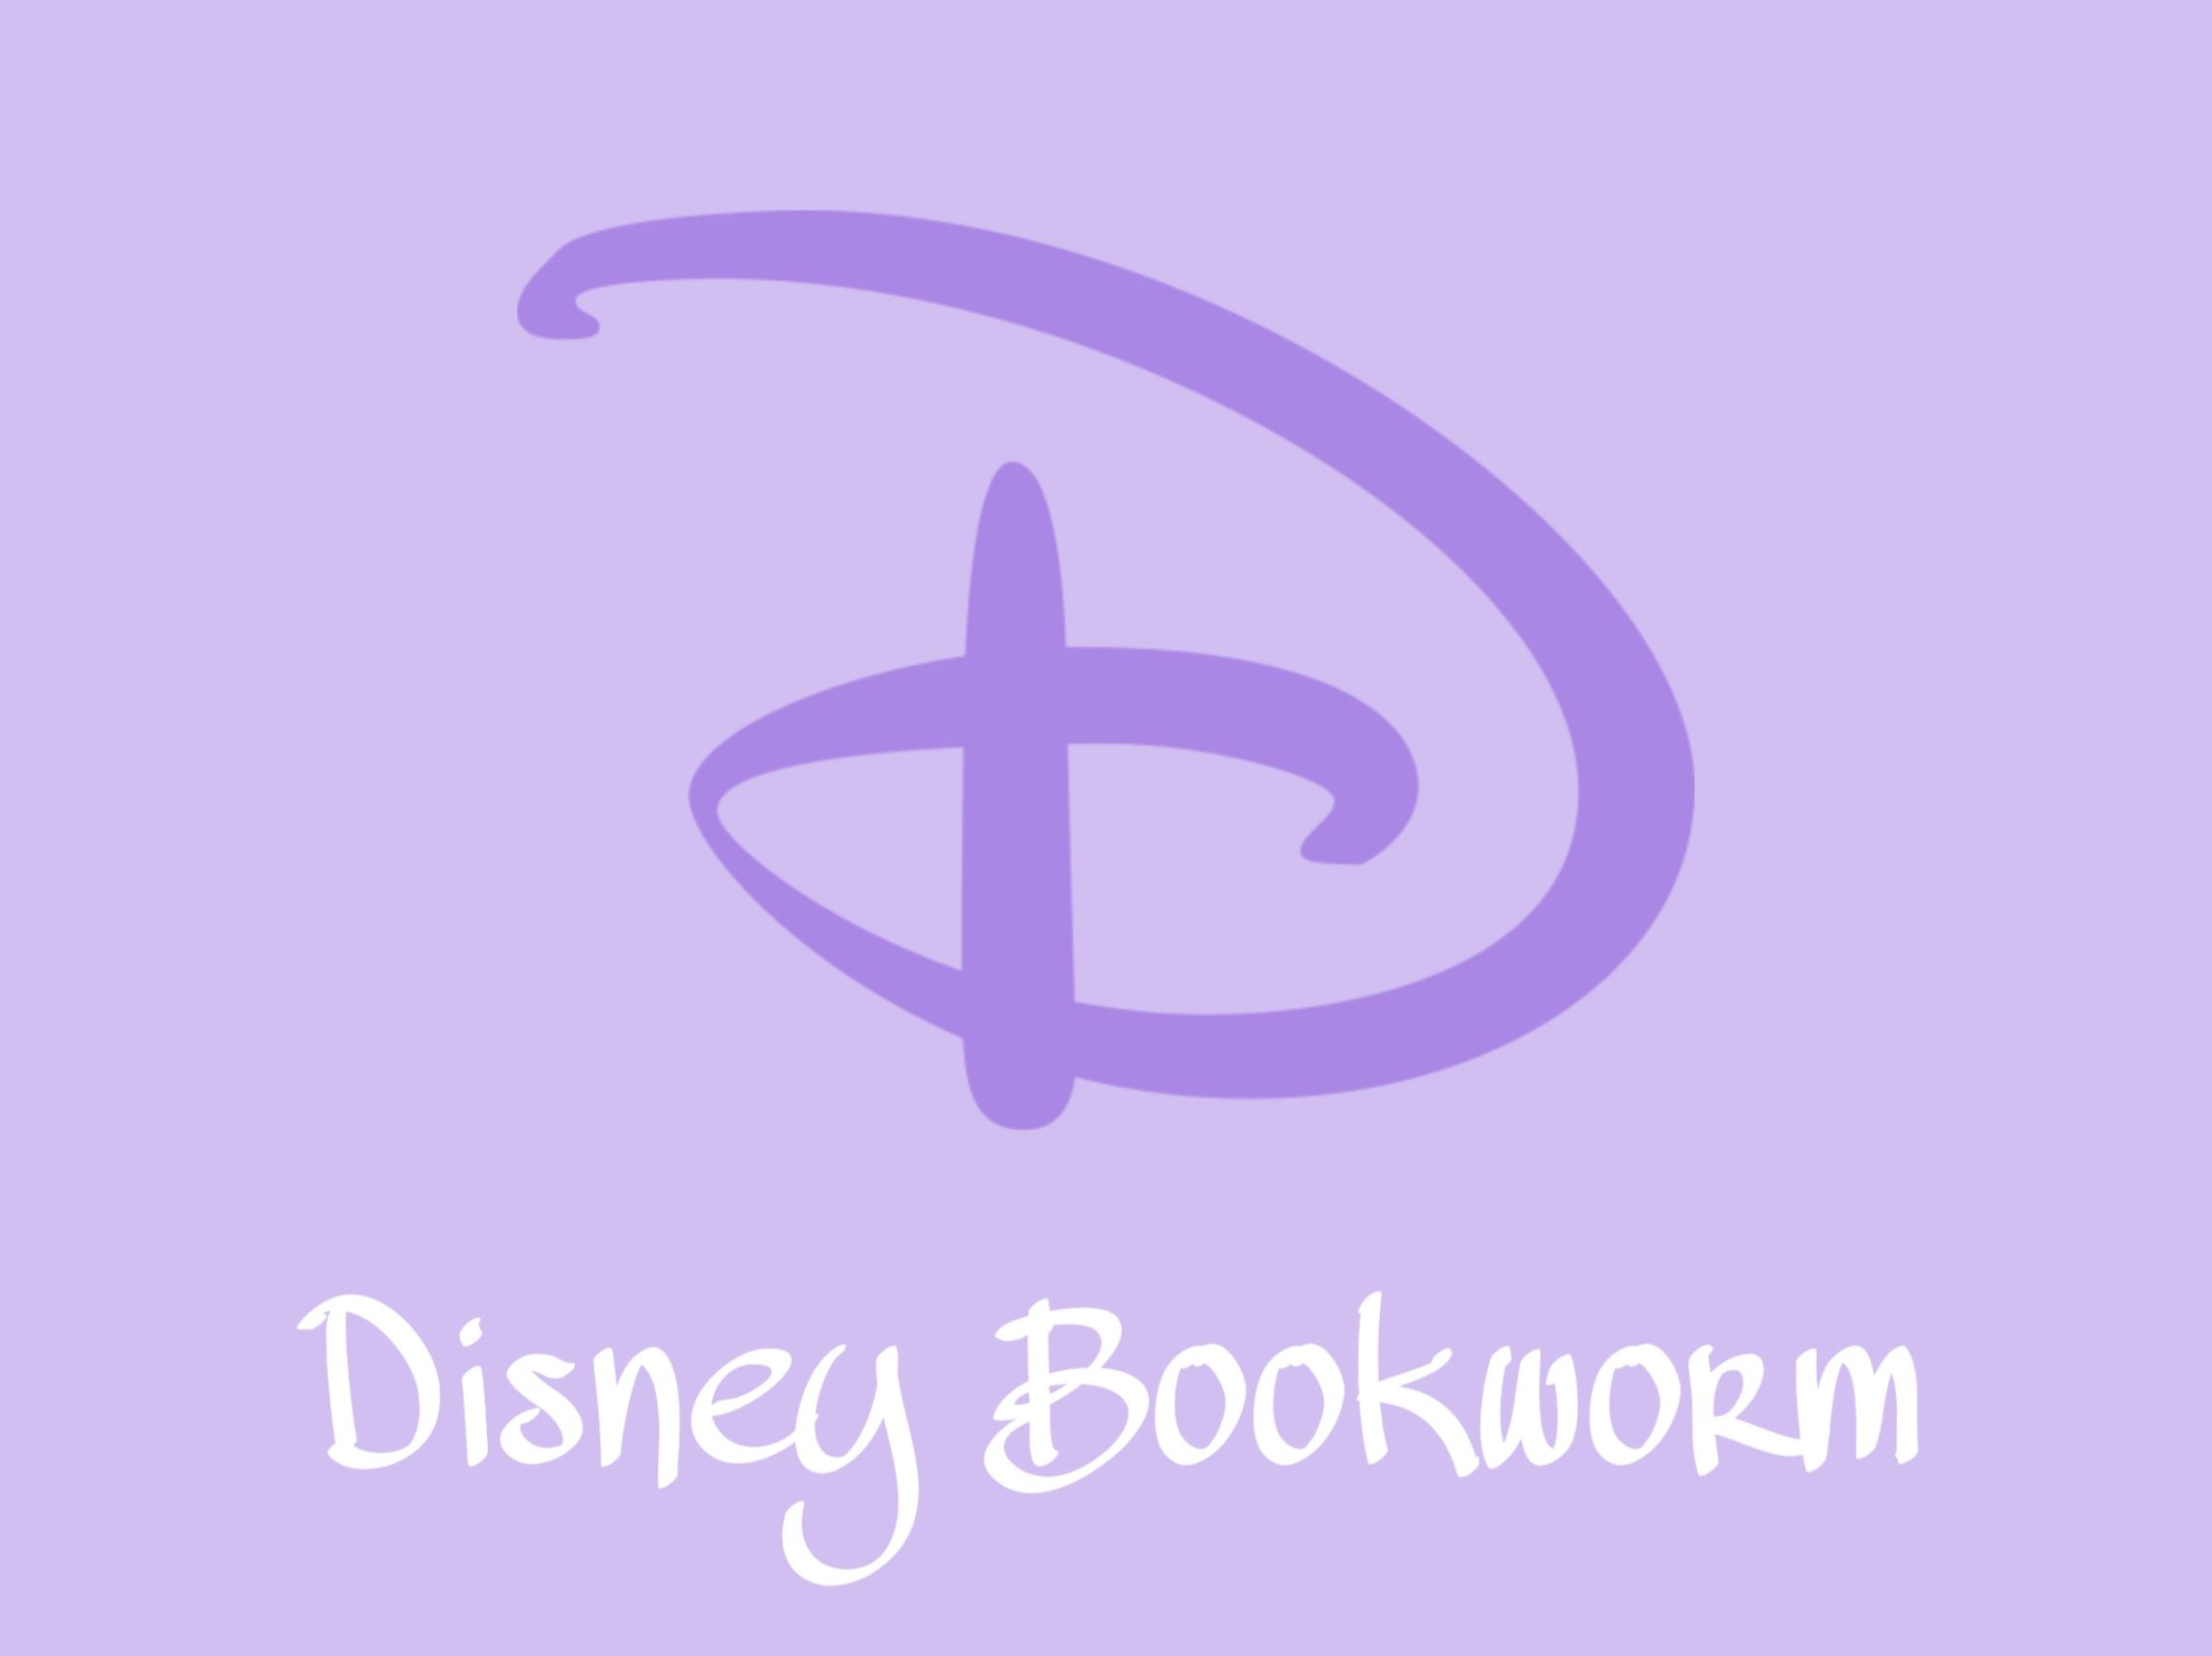          The Disney Bookworm